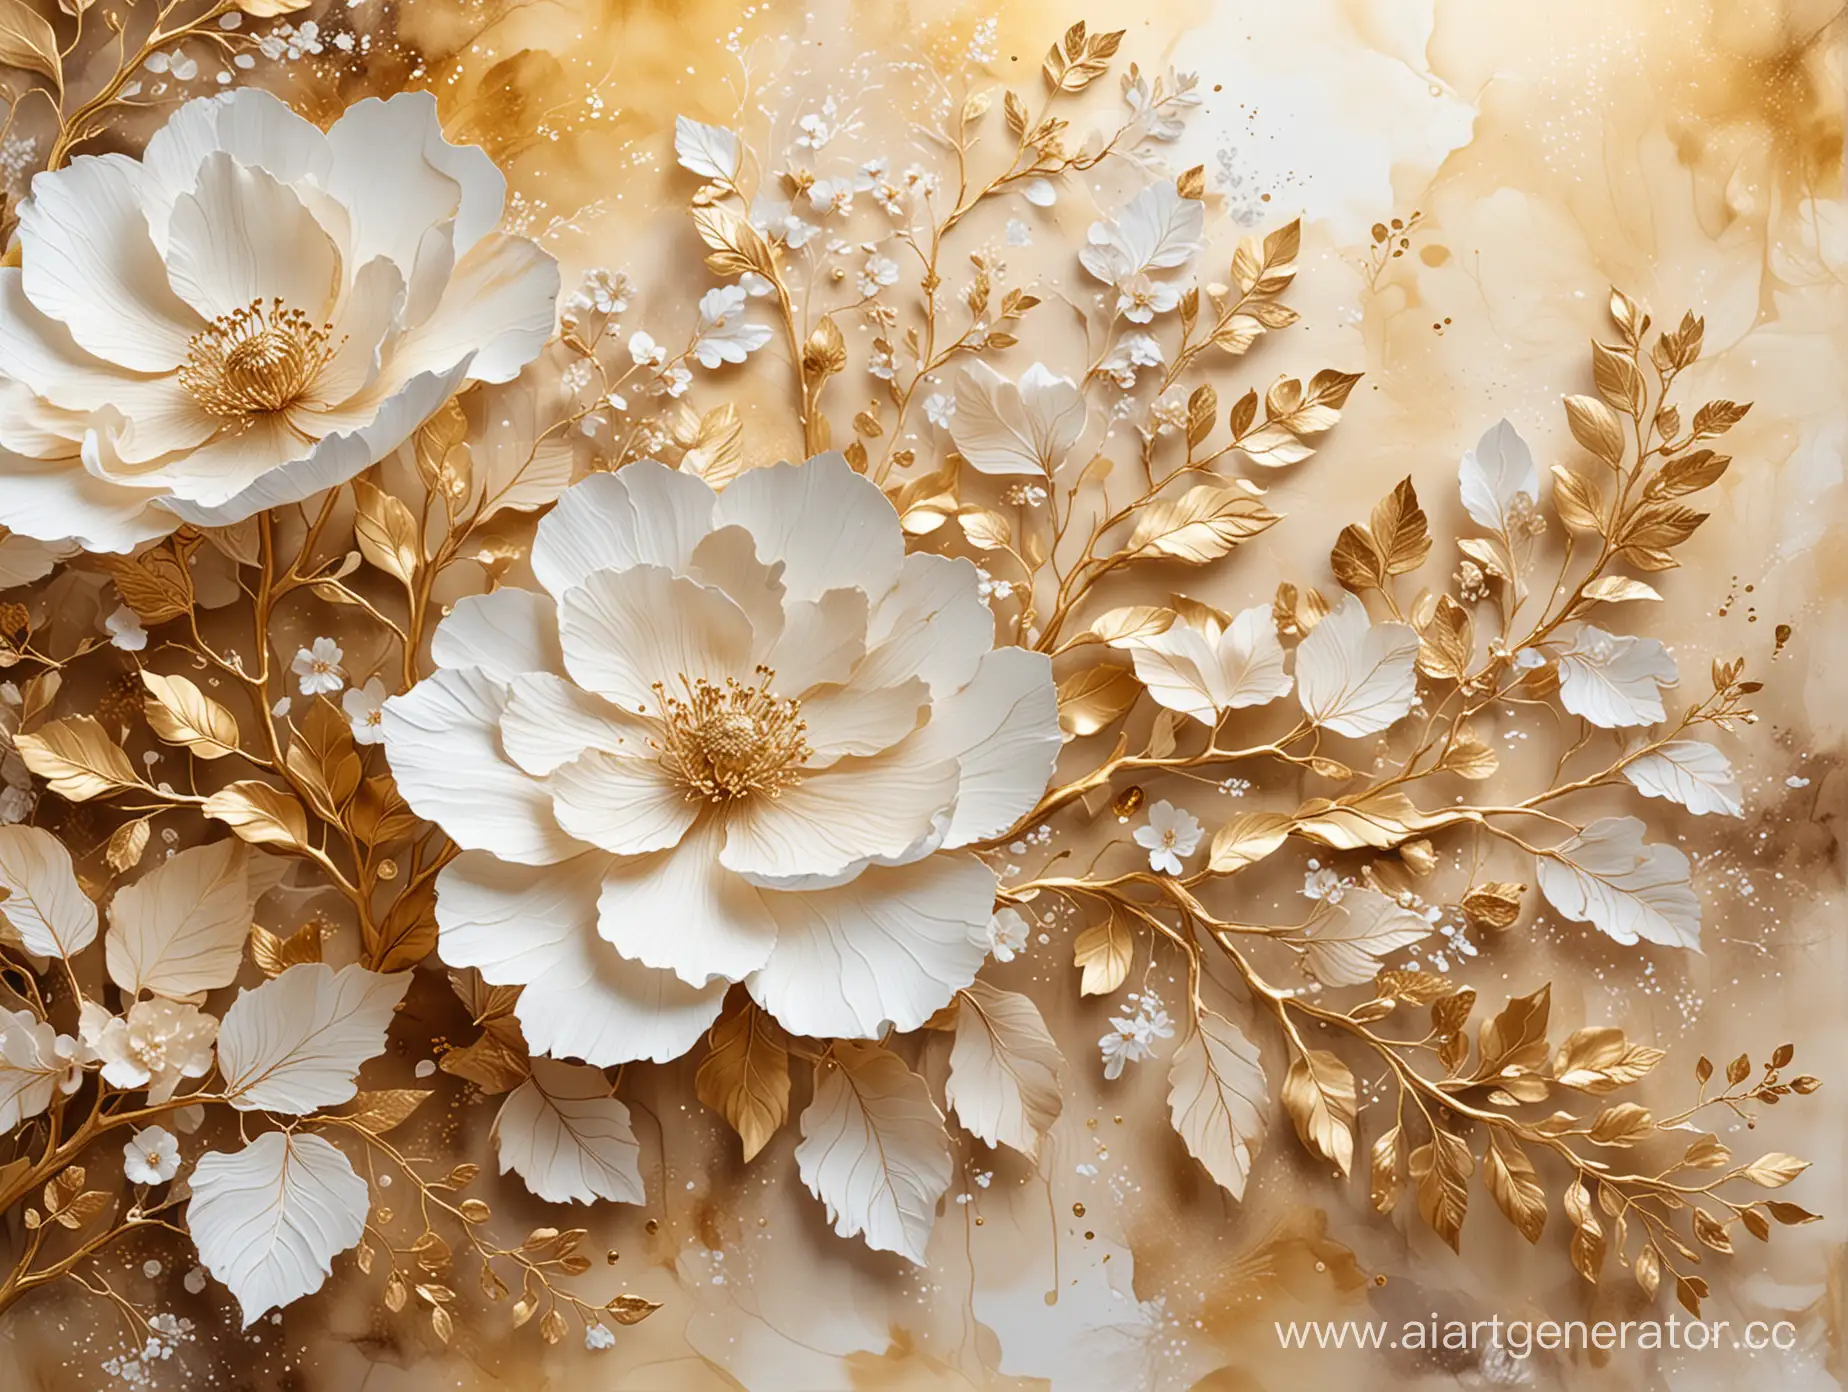 Elegant-3D-Gold-and-Beige-Floral-Arrangement-with-Alcohol-Ink-Aquarelle-Background